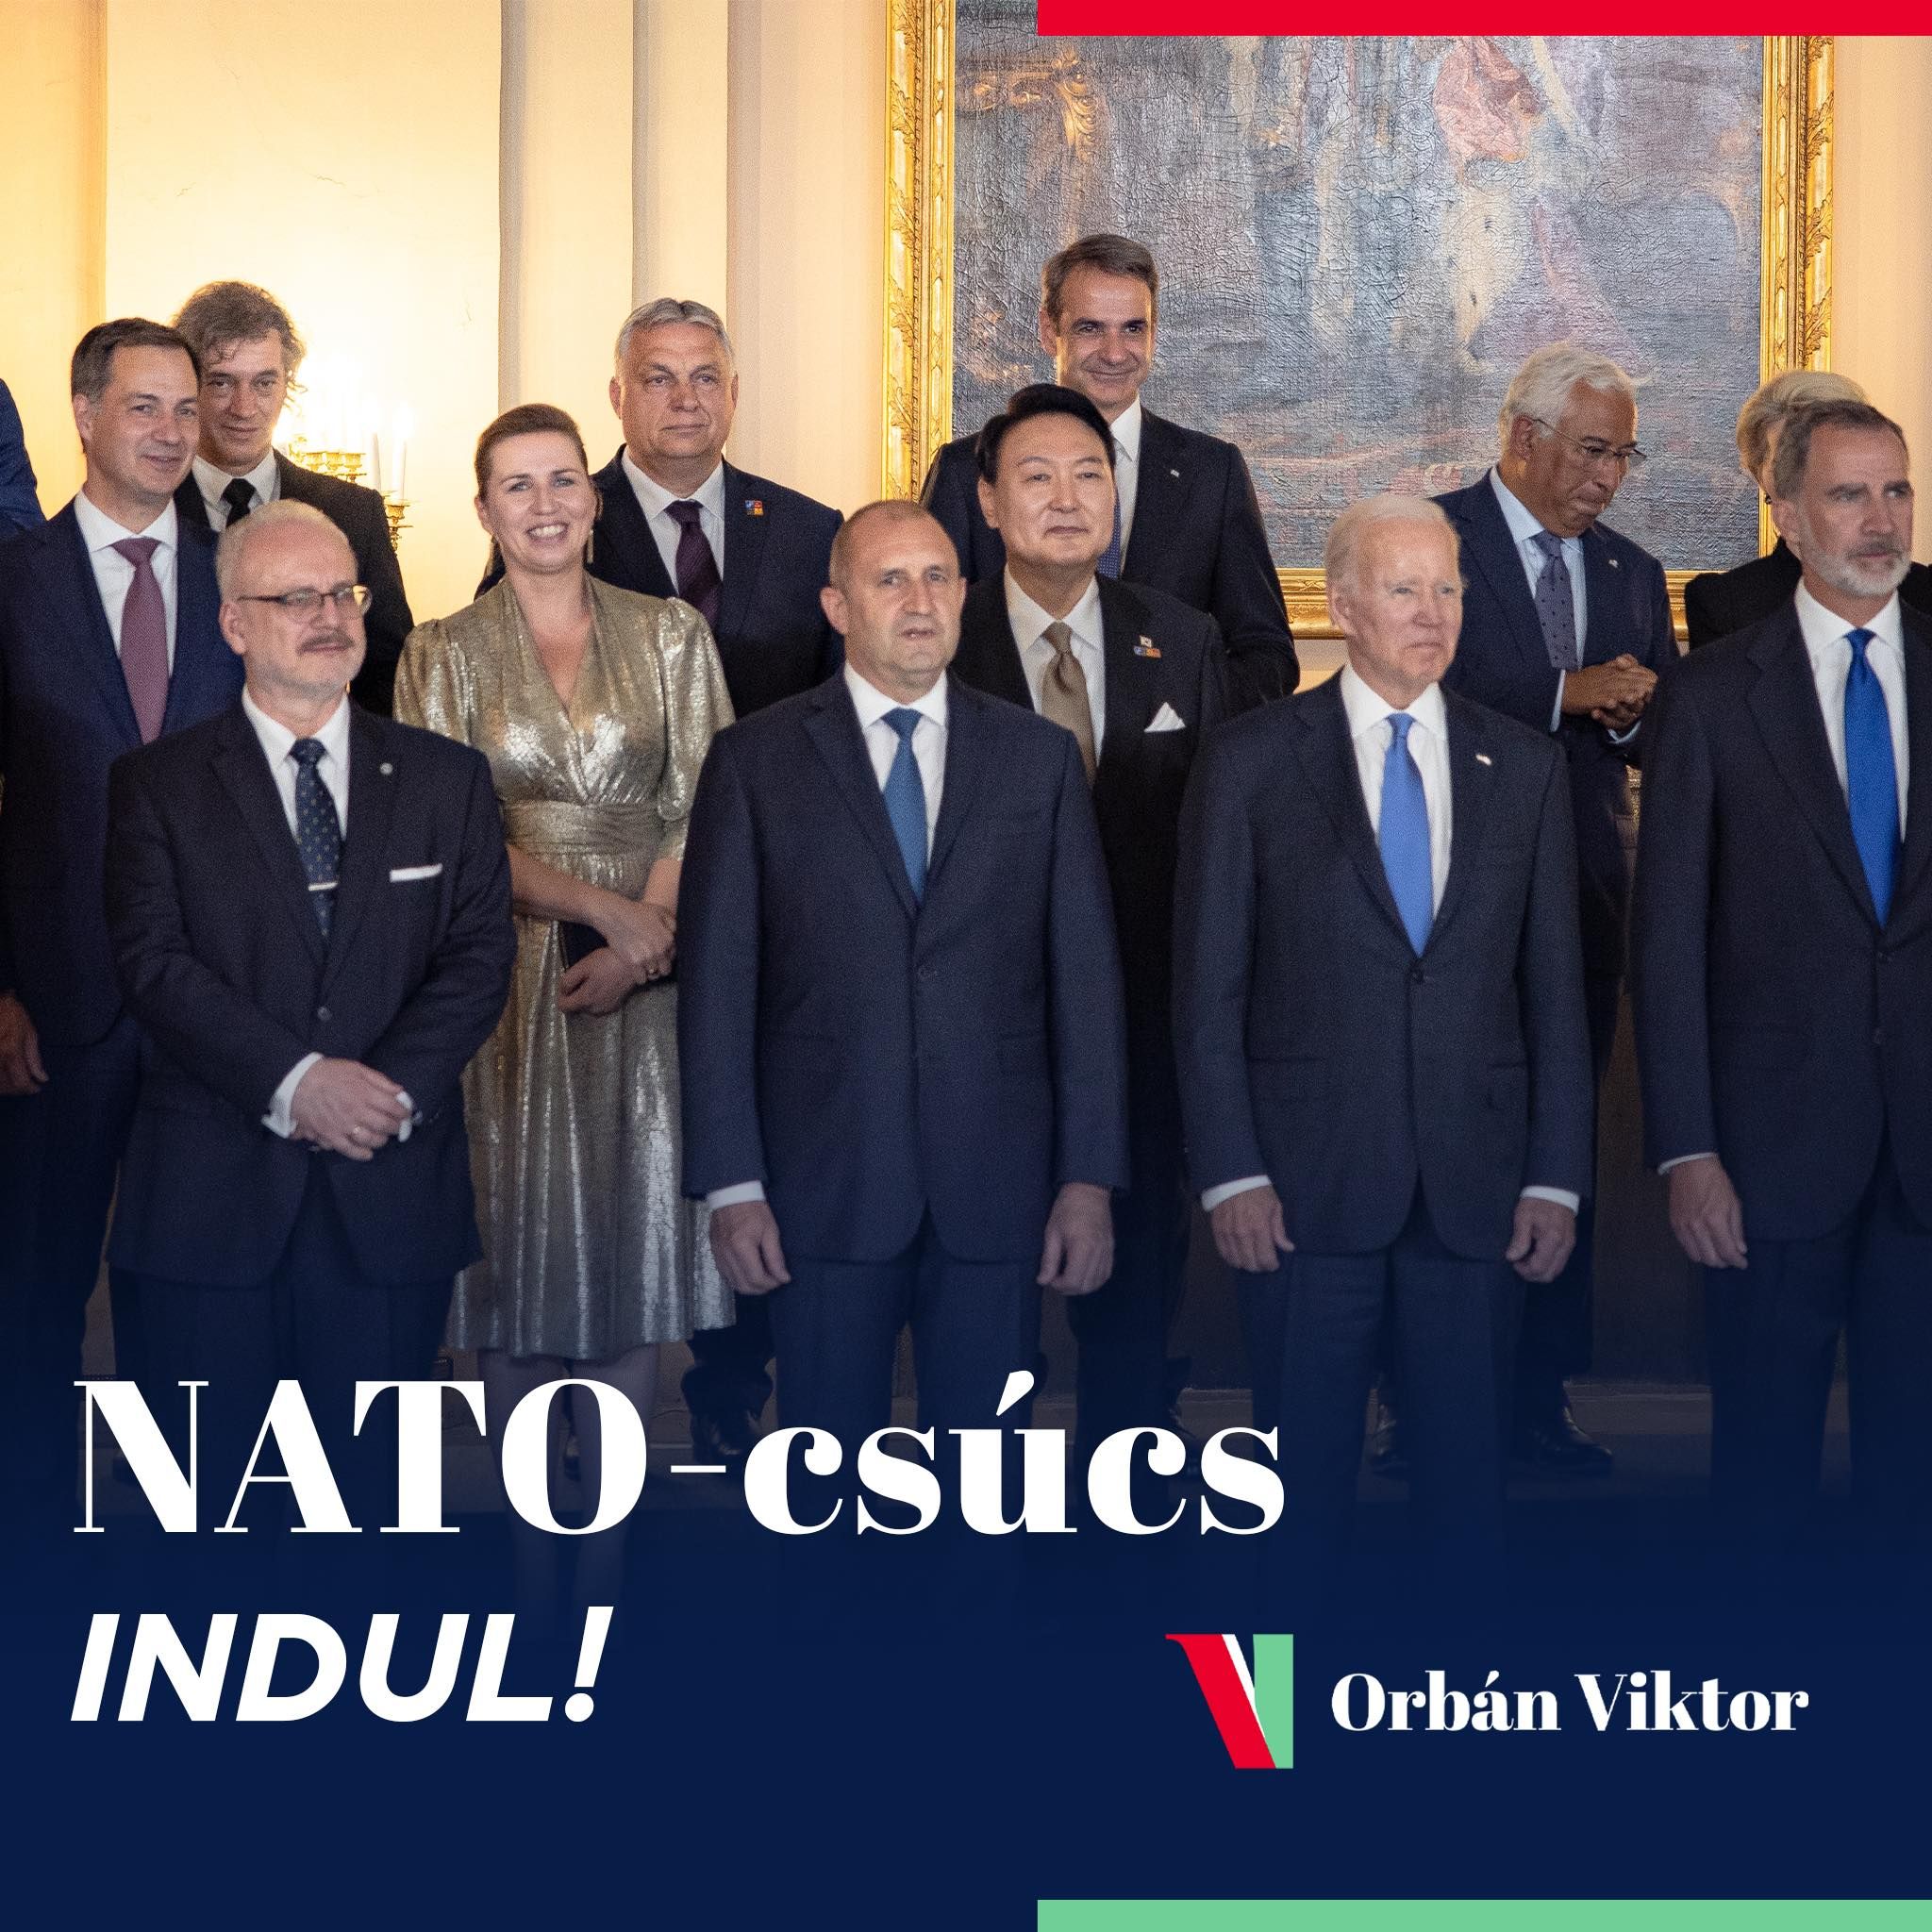 Orbán gyors fegyverszünetet és béketárgyalásokat szorgalmaz a NATO-csúcson